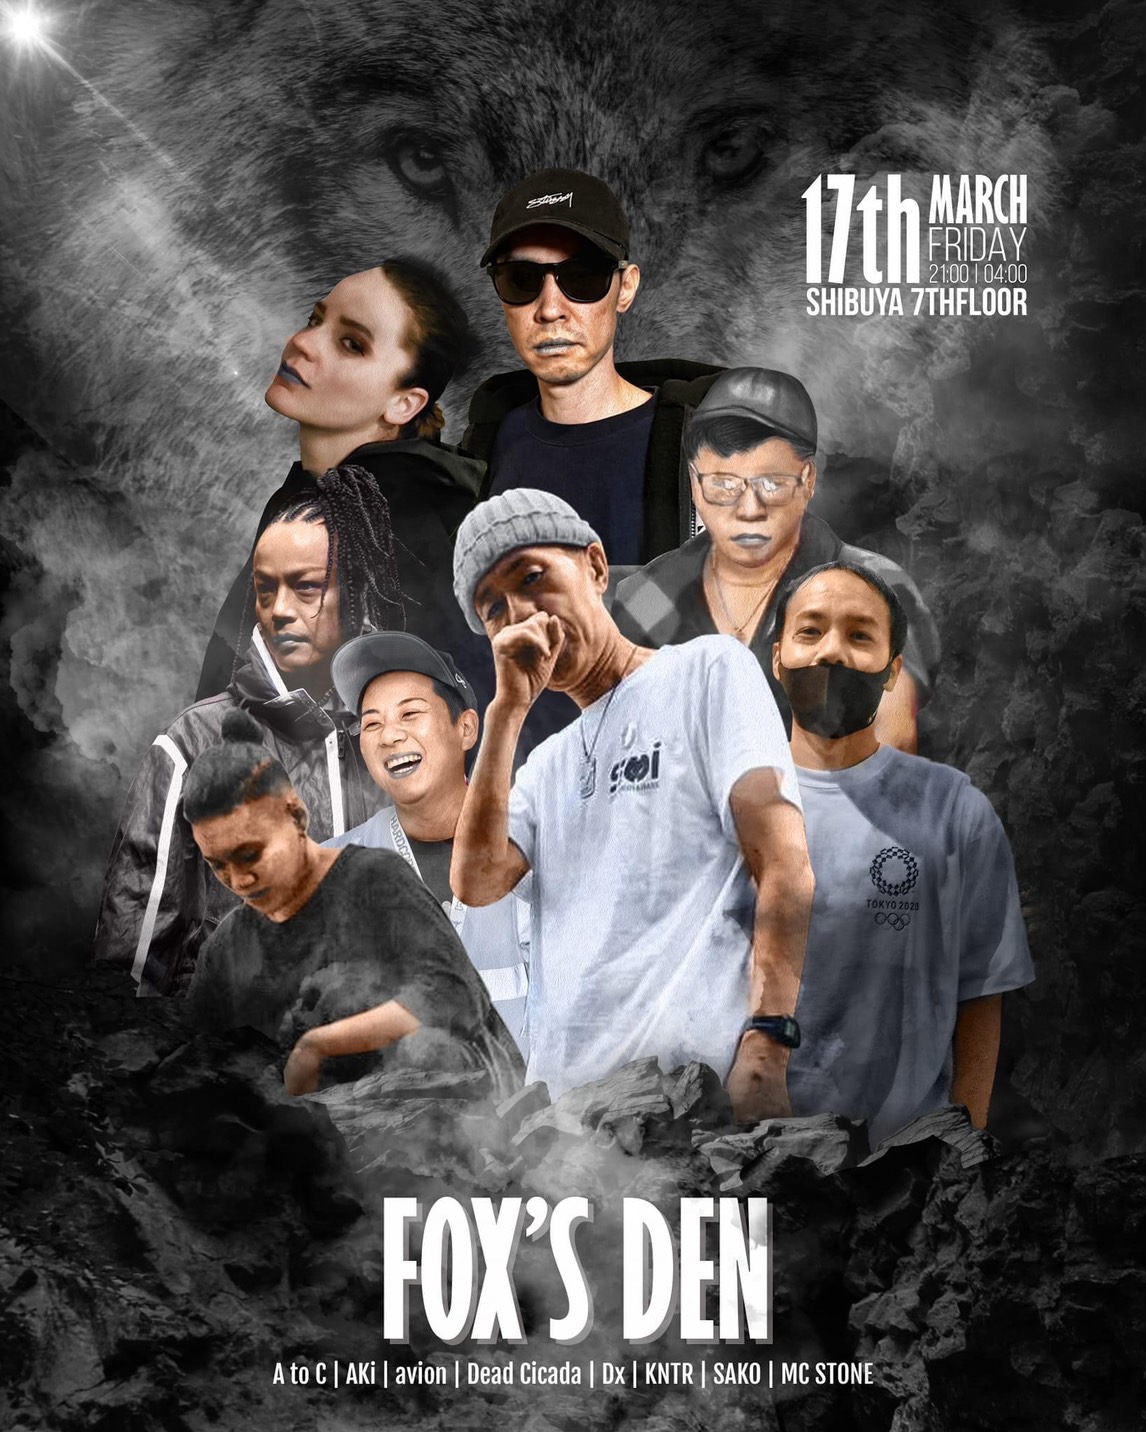 Fox’s Den